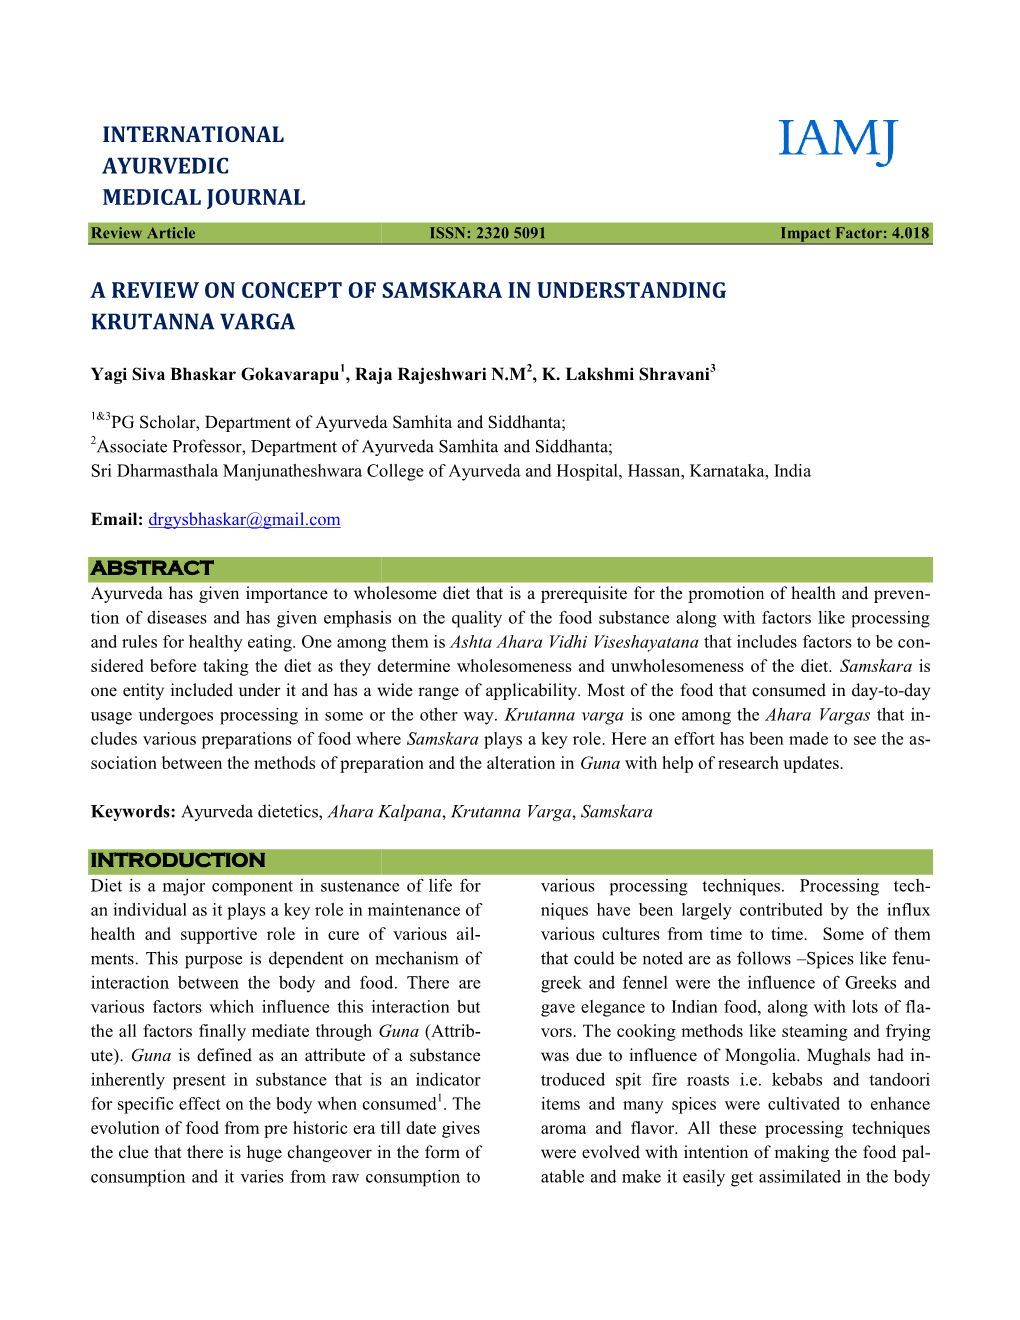 A Review on Concept of Samskara Krutanna Varga International Ayurvedic Medical Journal Ncept of Samskara in Understanding